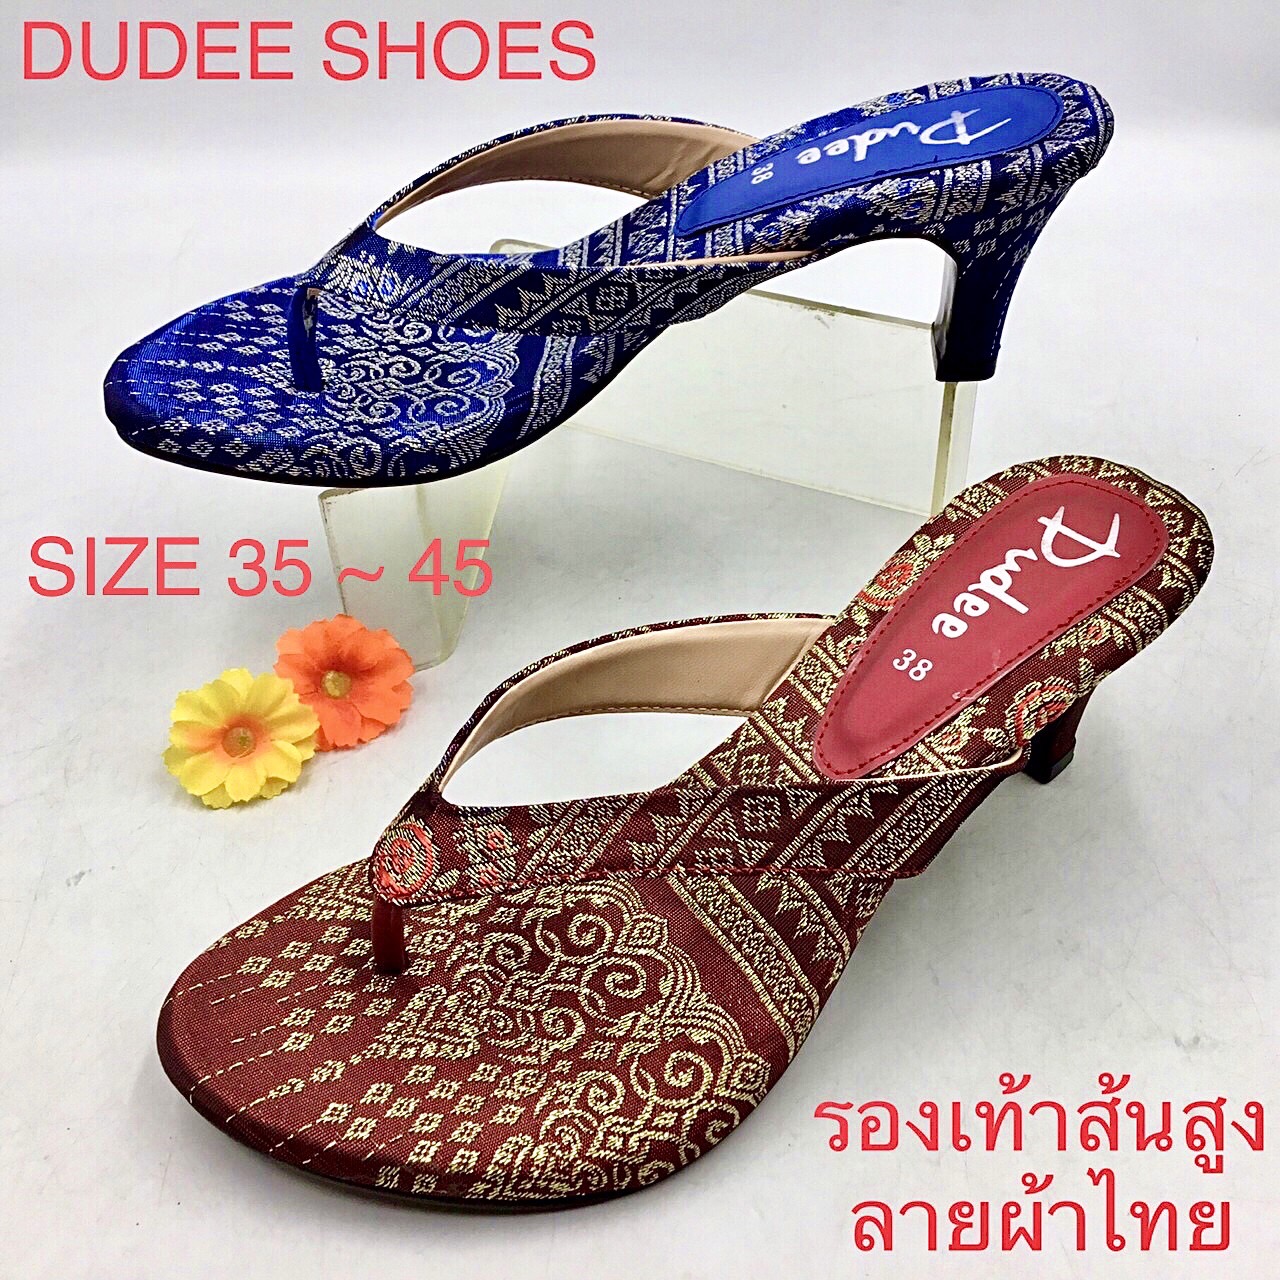 รองเท้าส้นสูงแบบหนีบ (Size 35-45) Dudee Shoes (ลายผ้าไทย) | Lazada.Co.Th